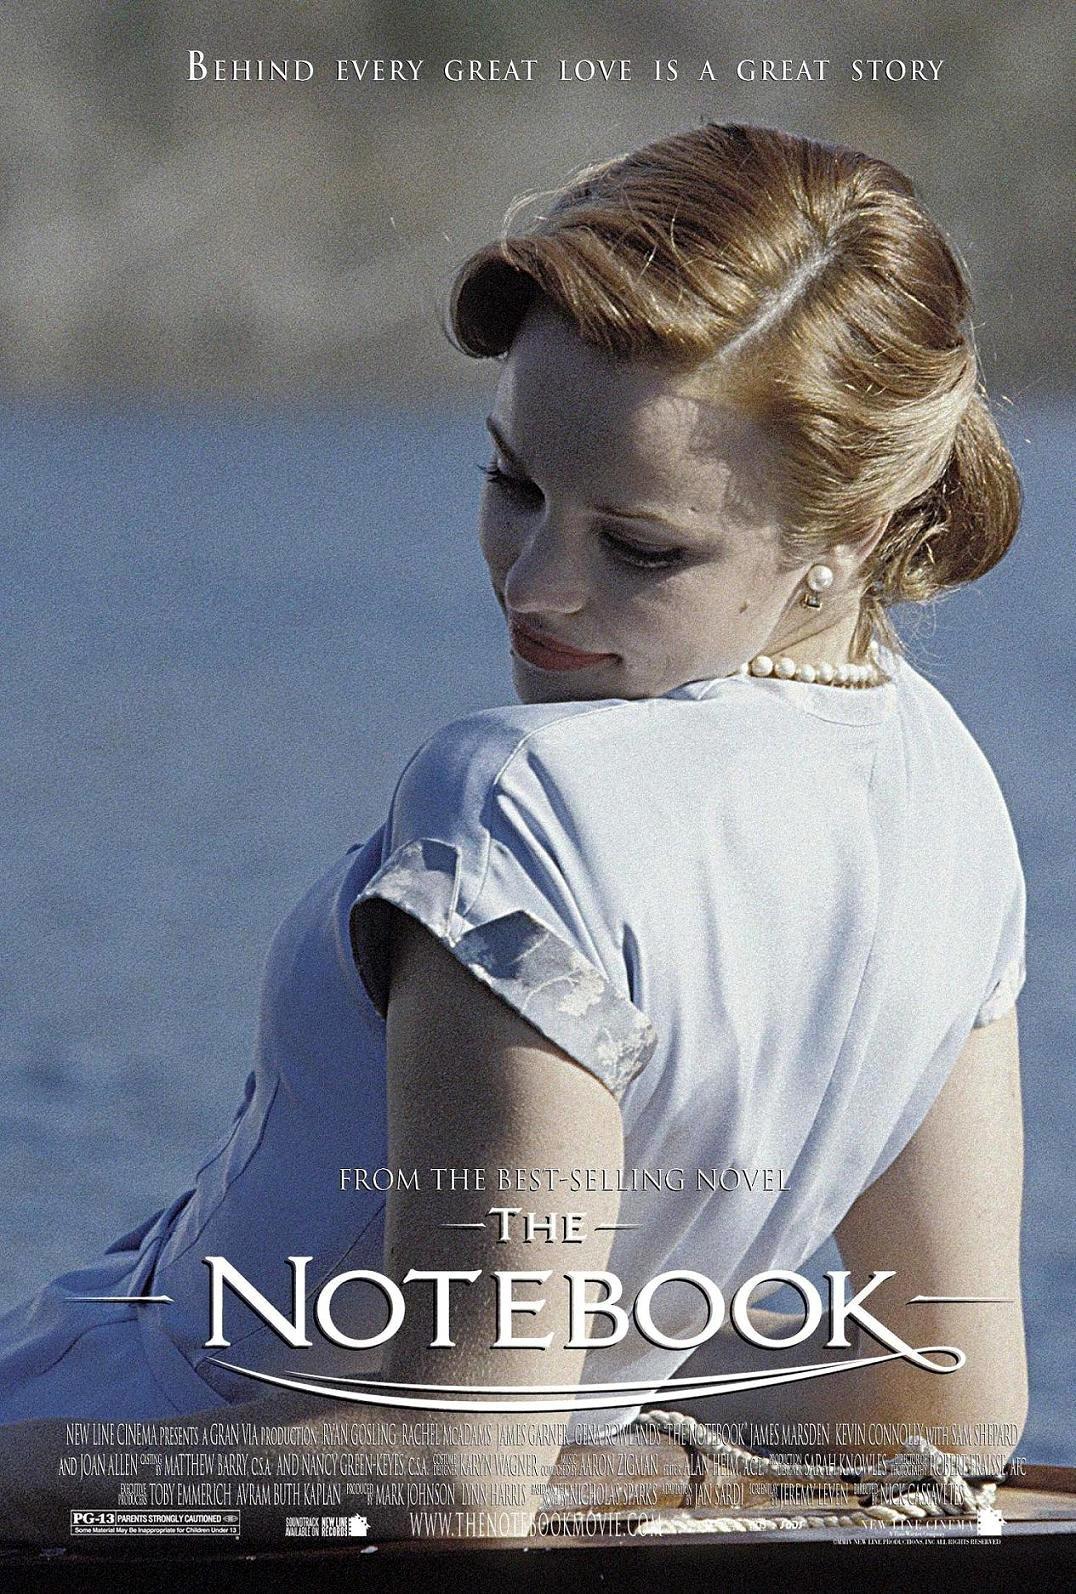 Дневник памяти содержание. Дневник памяти (the Notebook) 2004. Элли Гамильтон дневник памяти. Рэйчел Макадамс Элли Гамильтон. Рэйчел Макадамс the Notebook.